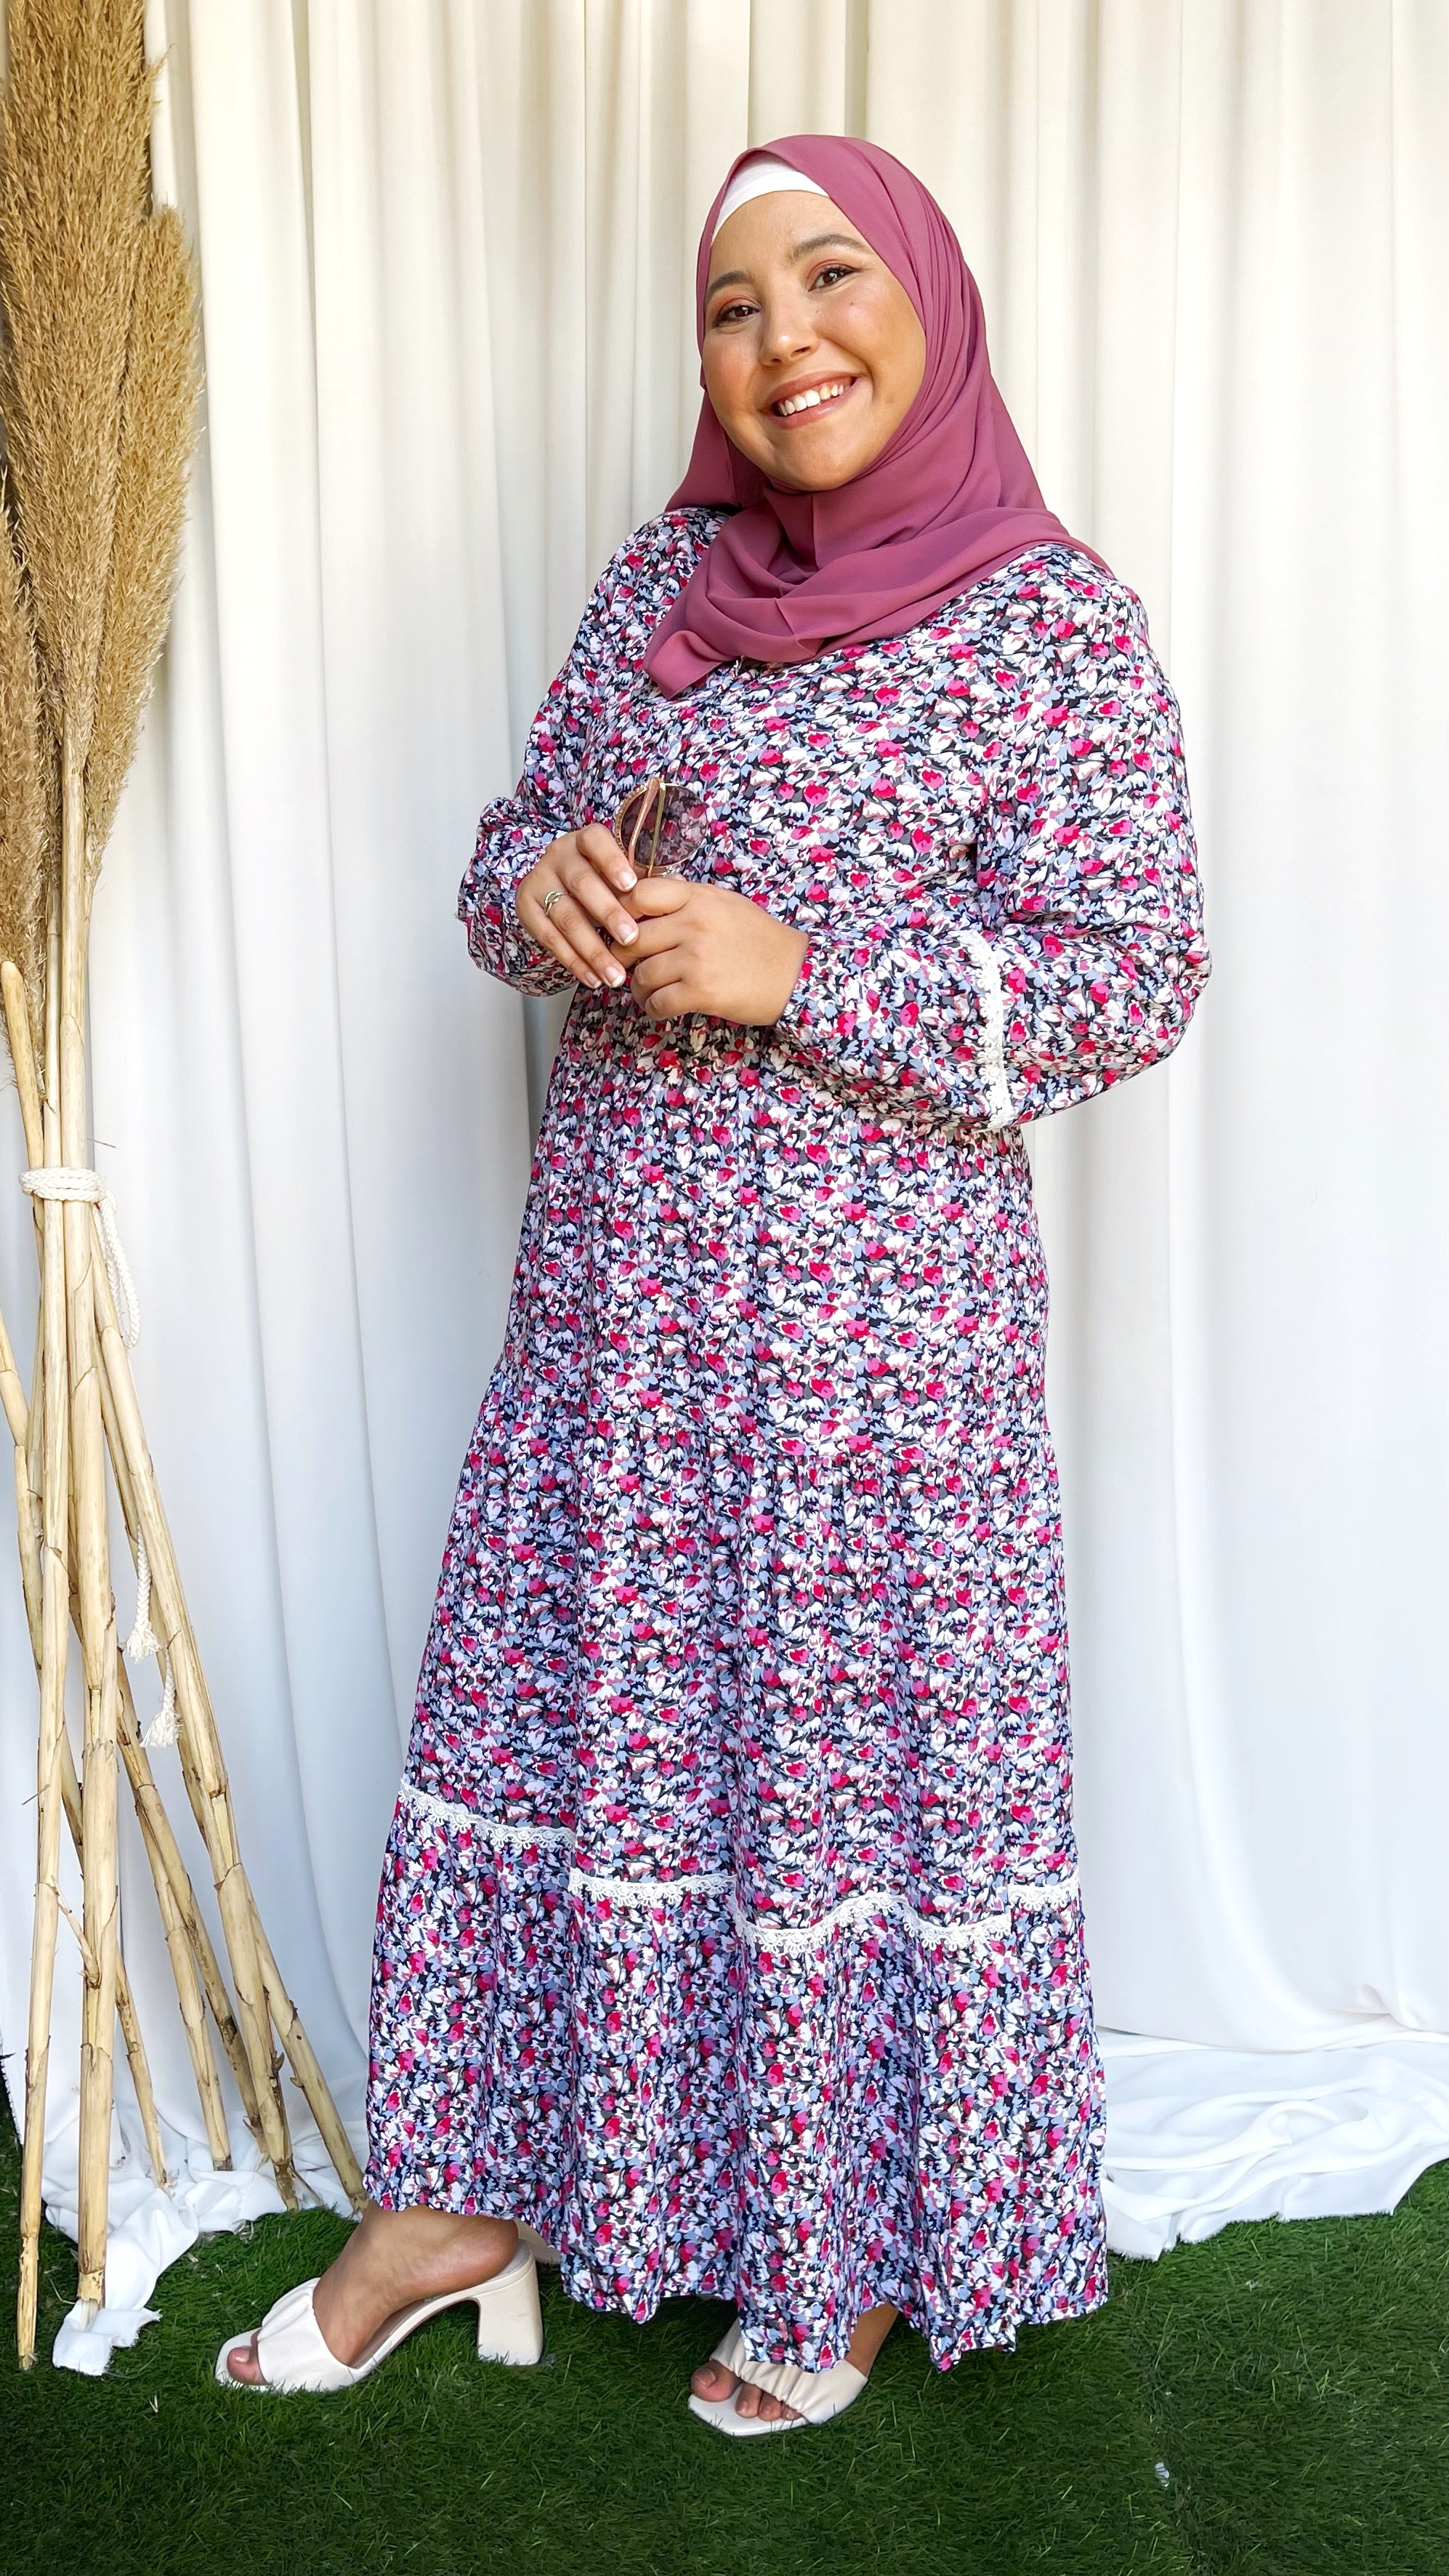 Vestito lungo, dress modest, Hijab Paradise, hijab, rosa, decorato con fiori